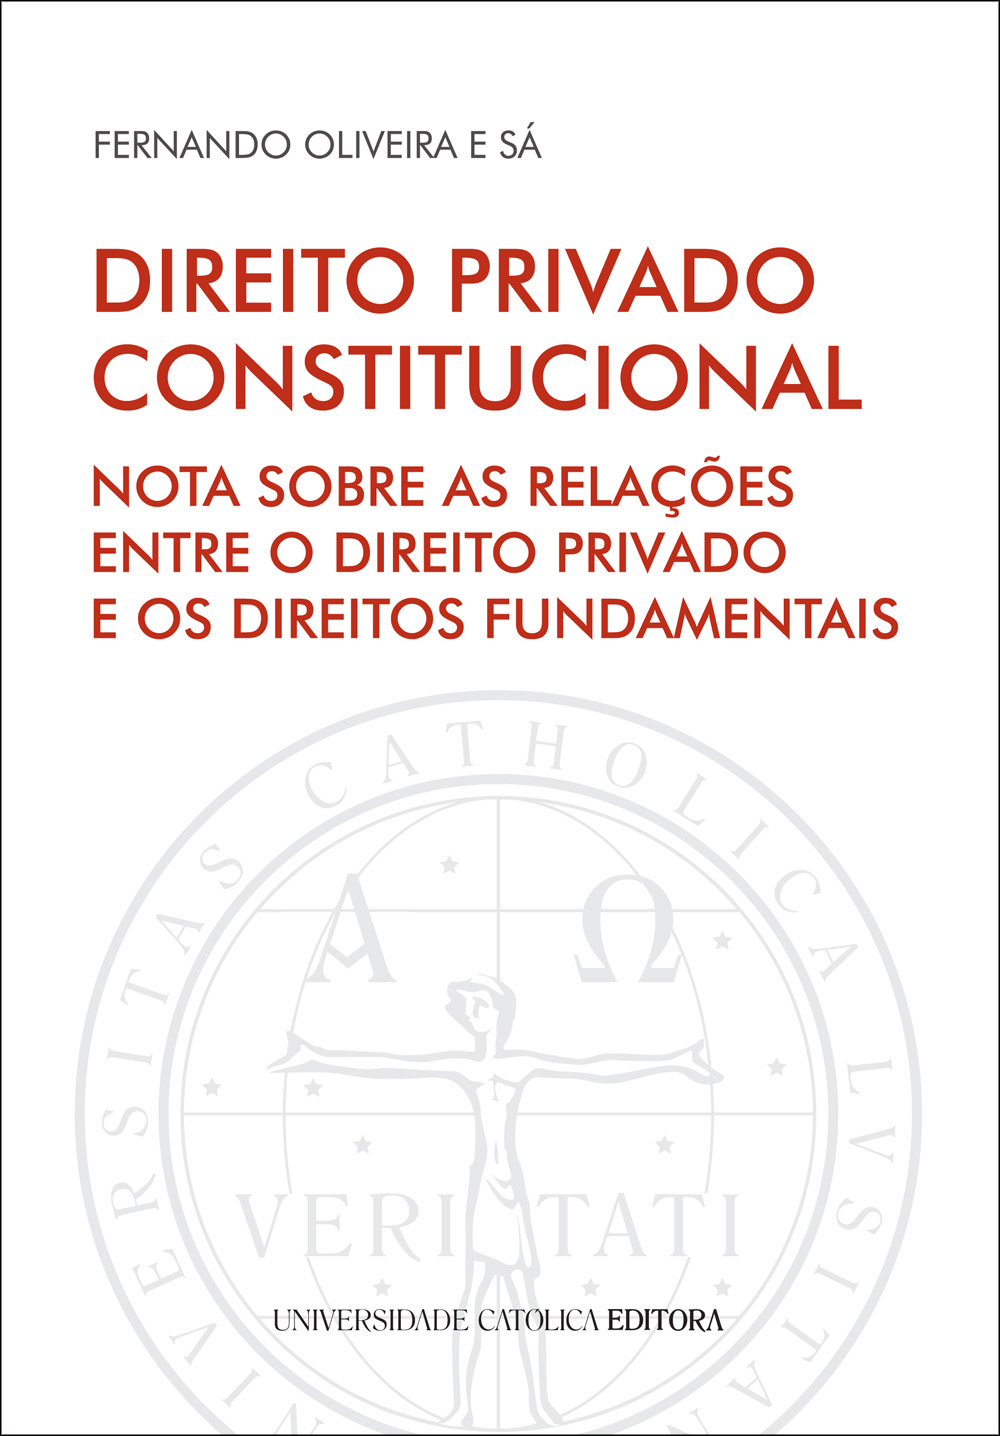 DIREITO PRIVADO CONSTITUCIONAL - Universidade Católica Editora